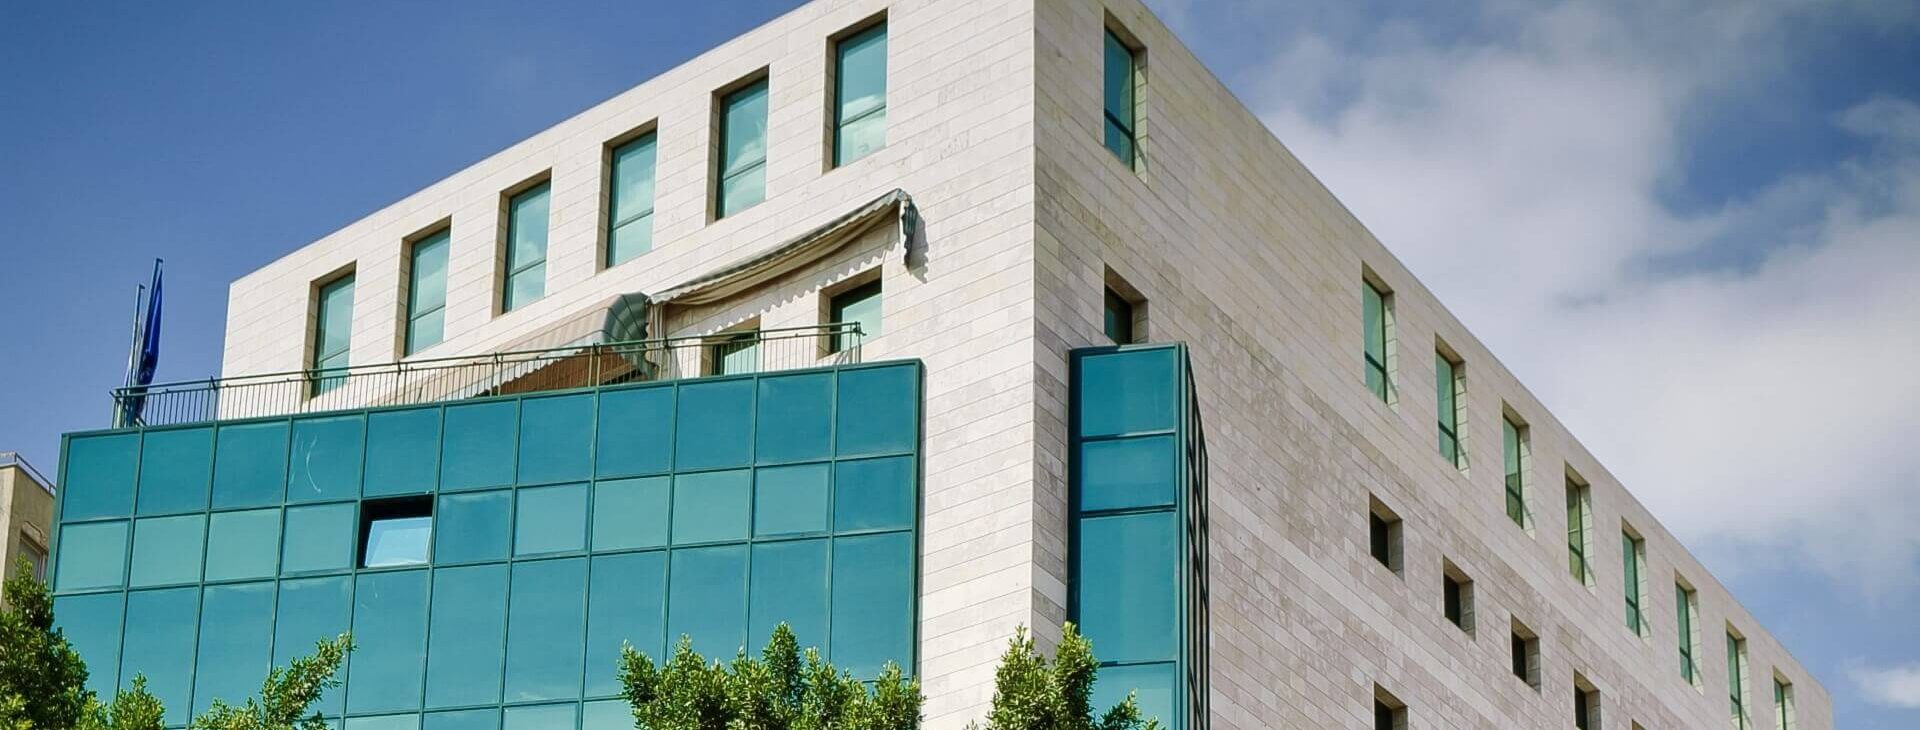 צילום של בניין משרדים בפרויקט בית אמריקה ישראל בפתח תקווה